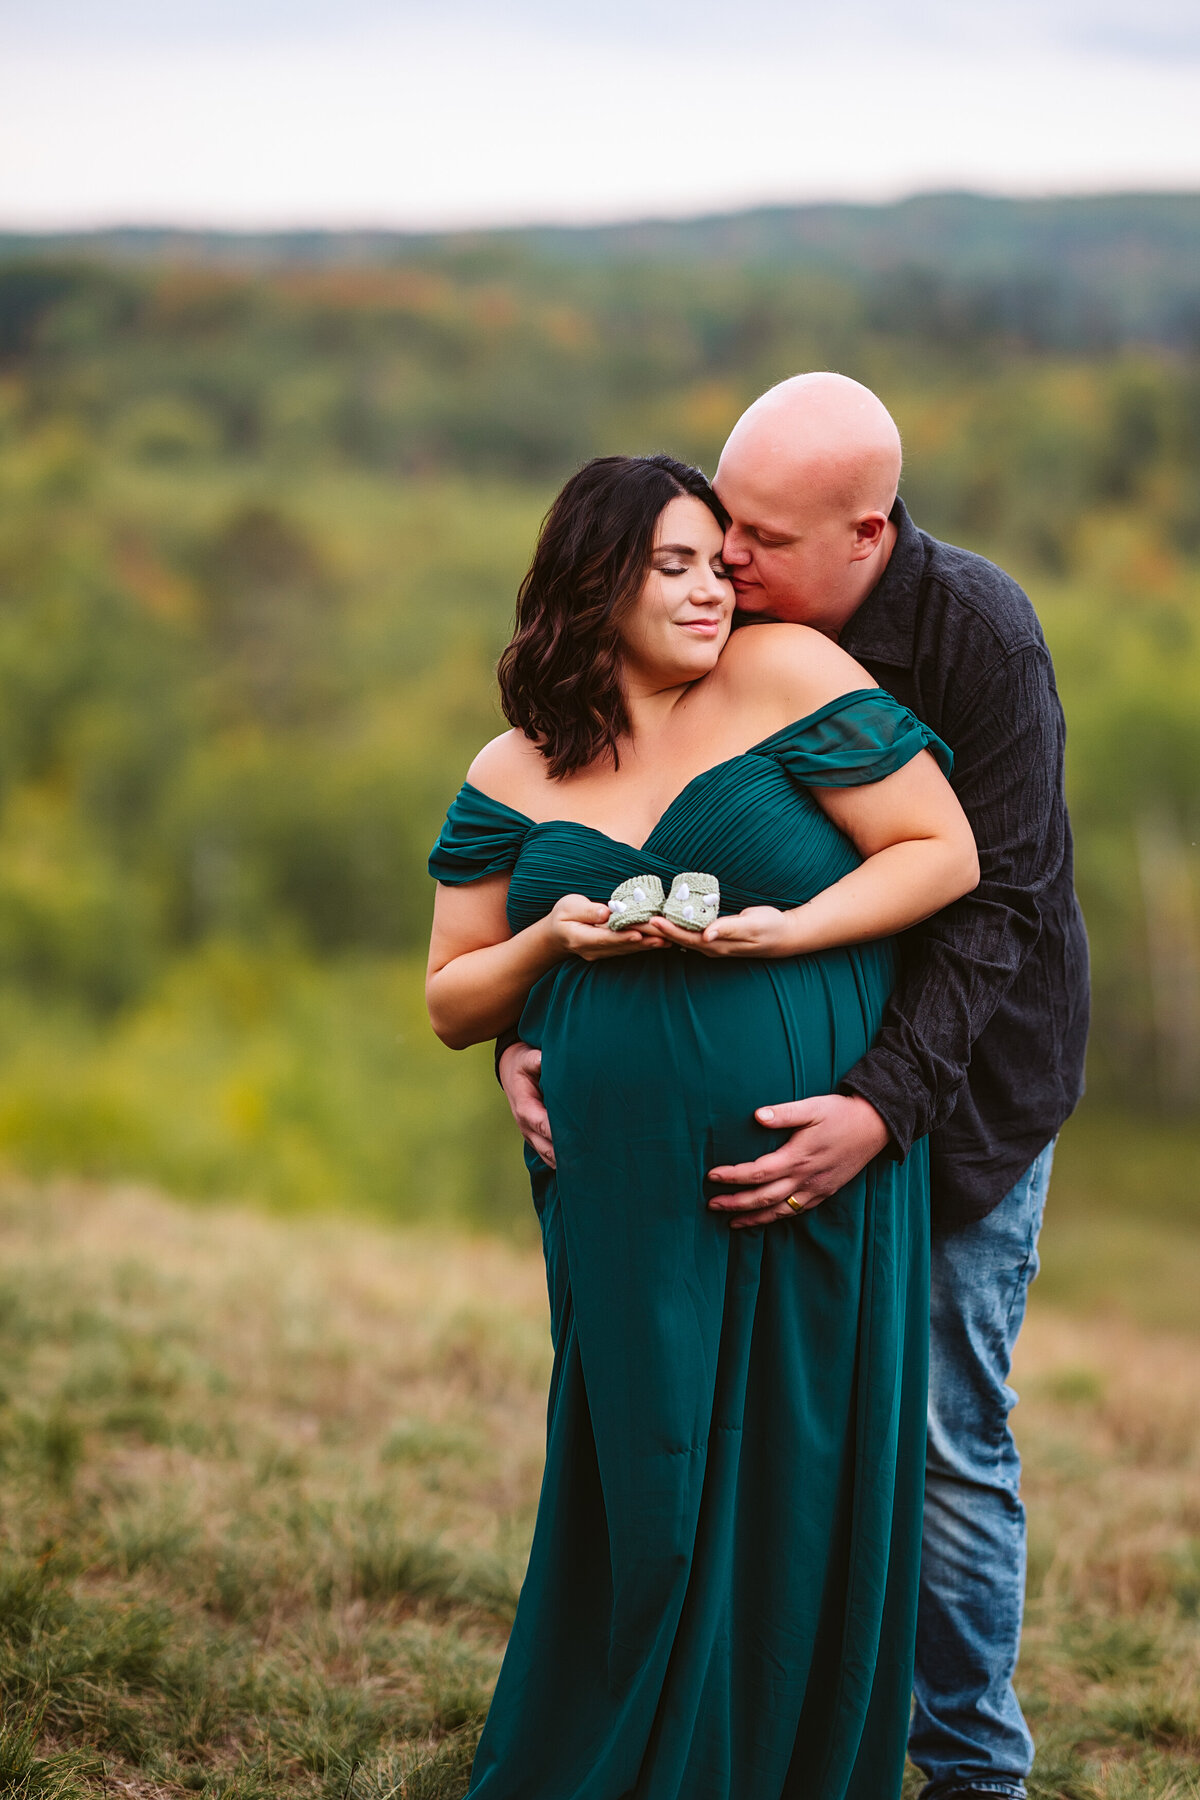 Minnesota-Alyssa Ashley Photography-Chelsie + Eric maternity session-2